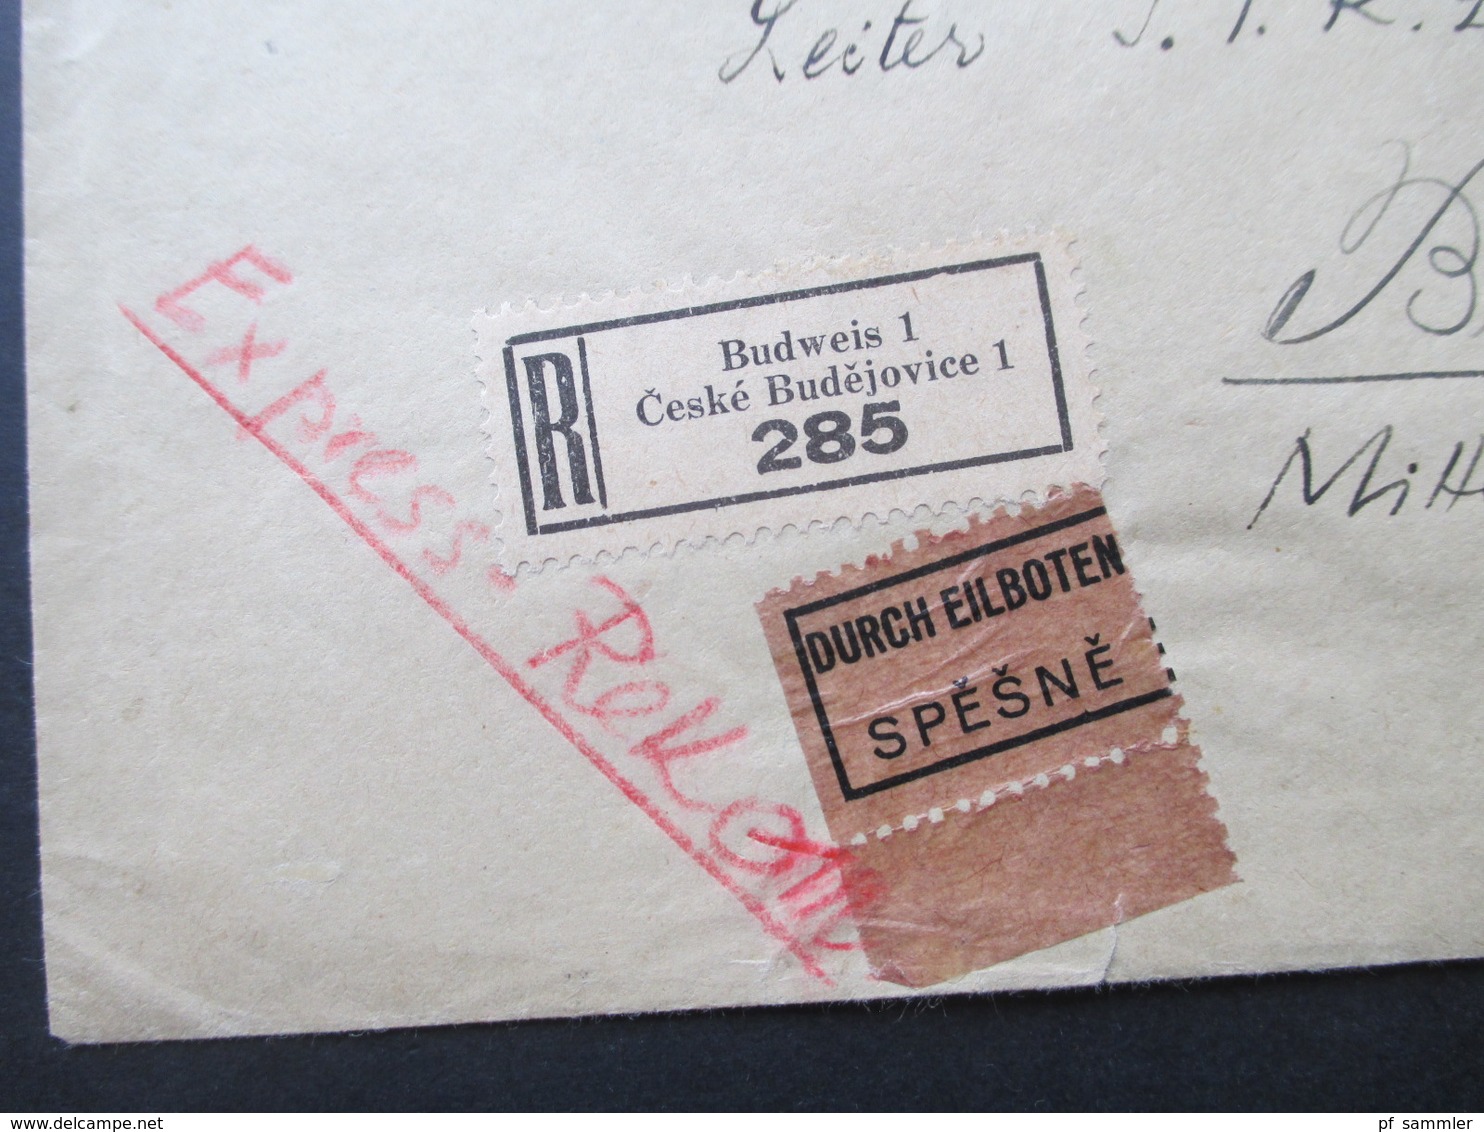 Böhmen Und Mähren 1942 MiF Einschreiben / Durch Eilboten Spesne Zweisprachiger R-Zettel Budweis 1 Ceske Budejovice 1 - Briefe U. Dokumente